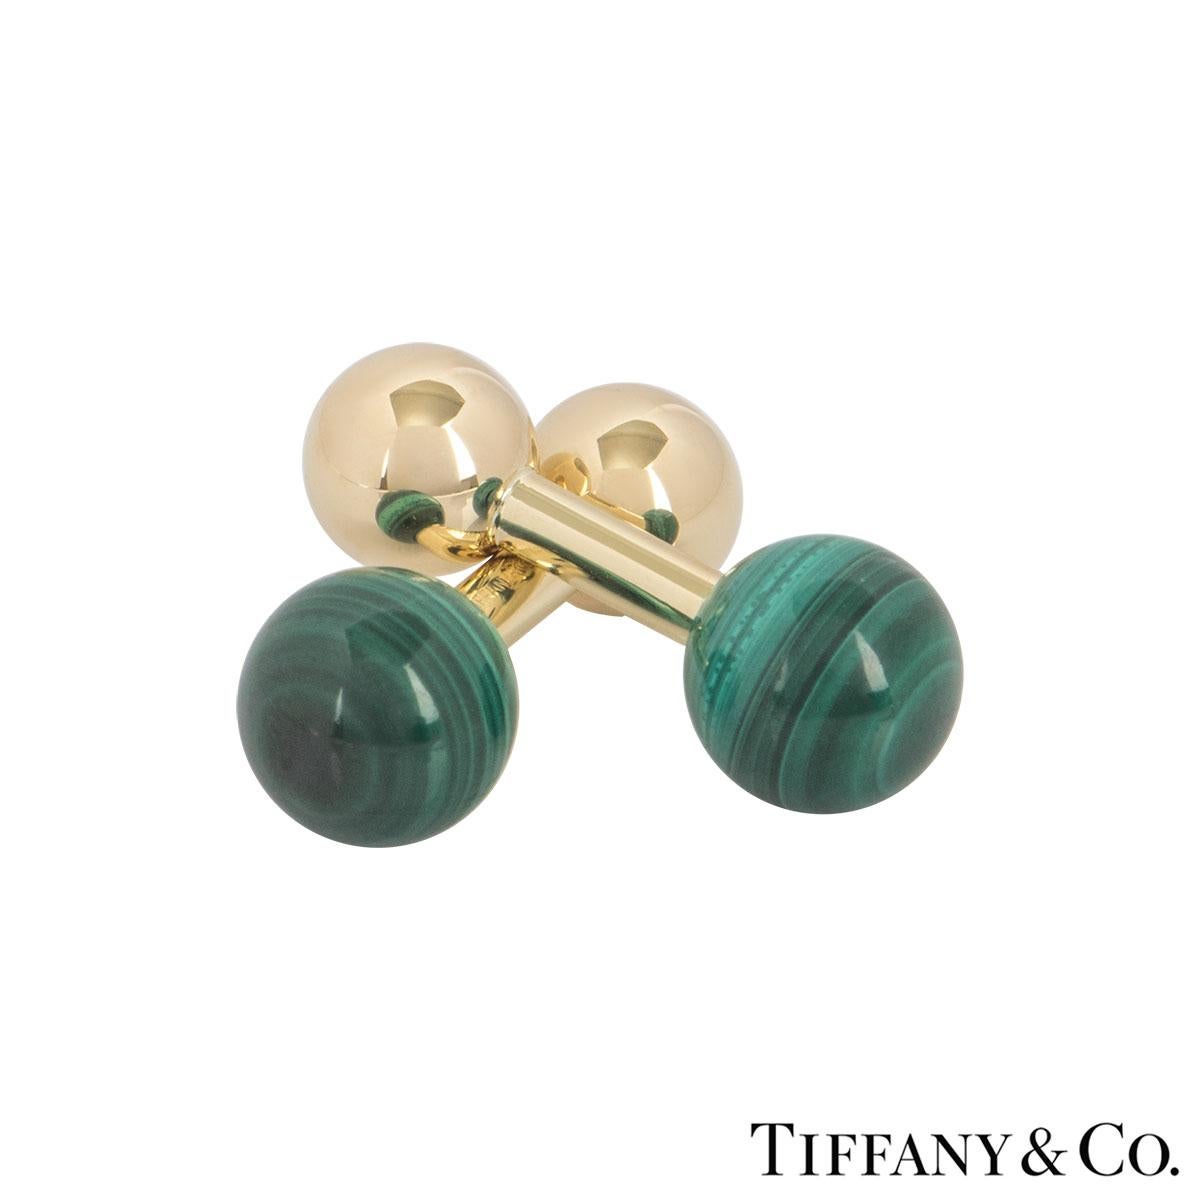 Uncut Tiffany & Co. Yellow Gold Malachite Ball Cufflinks